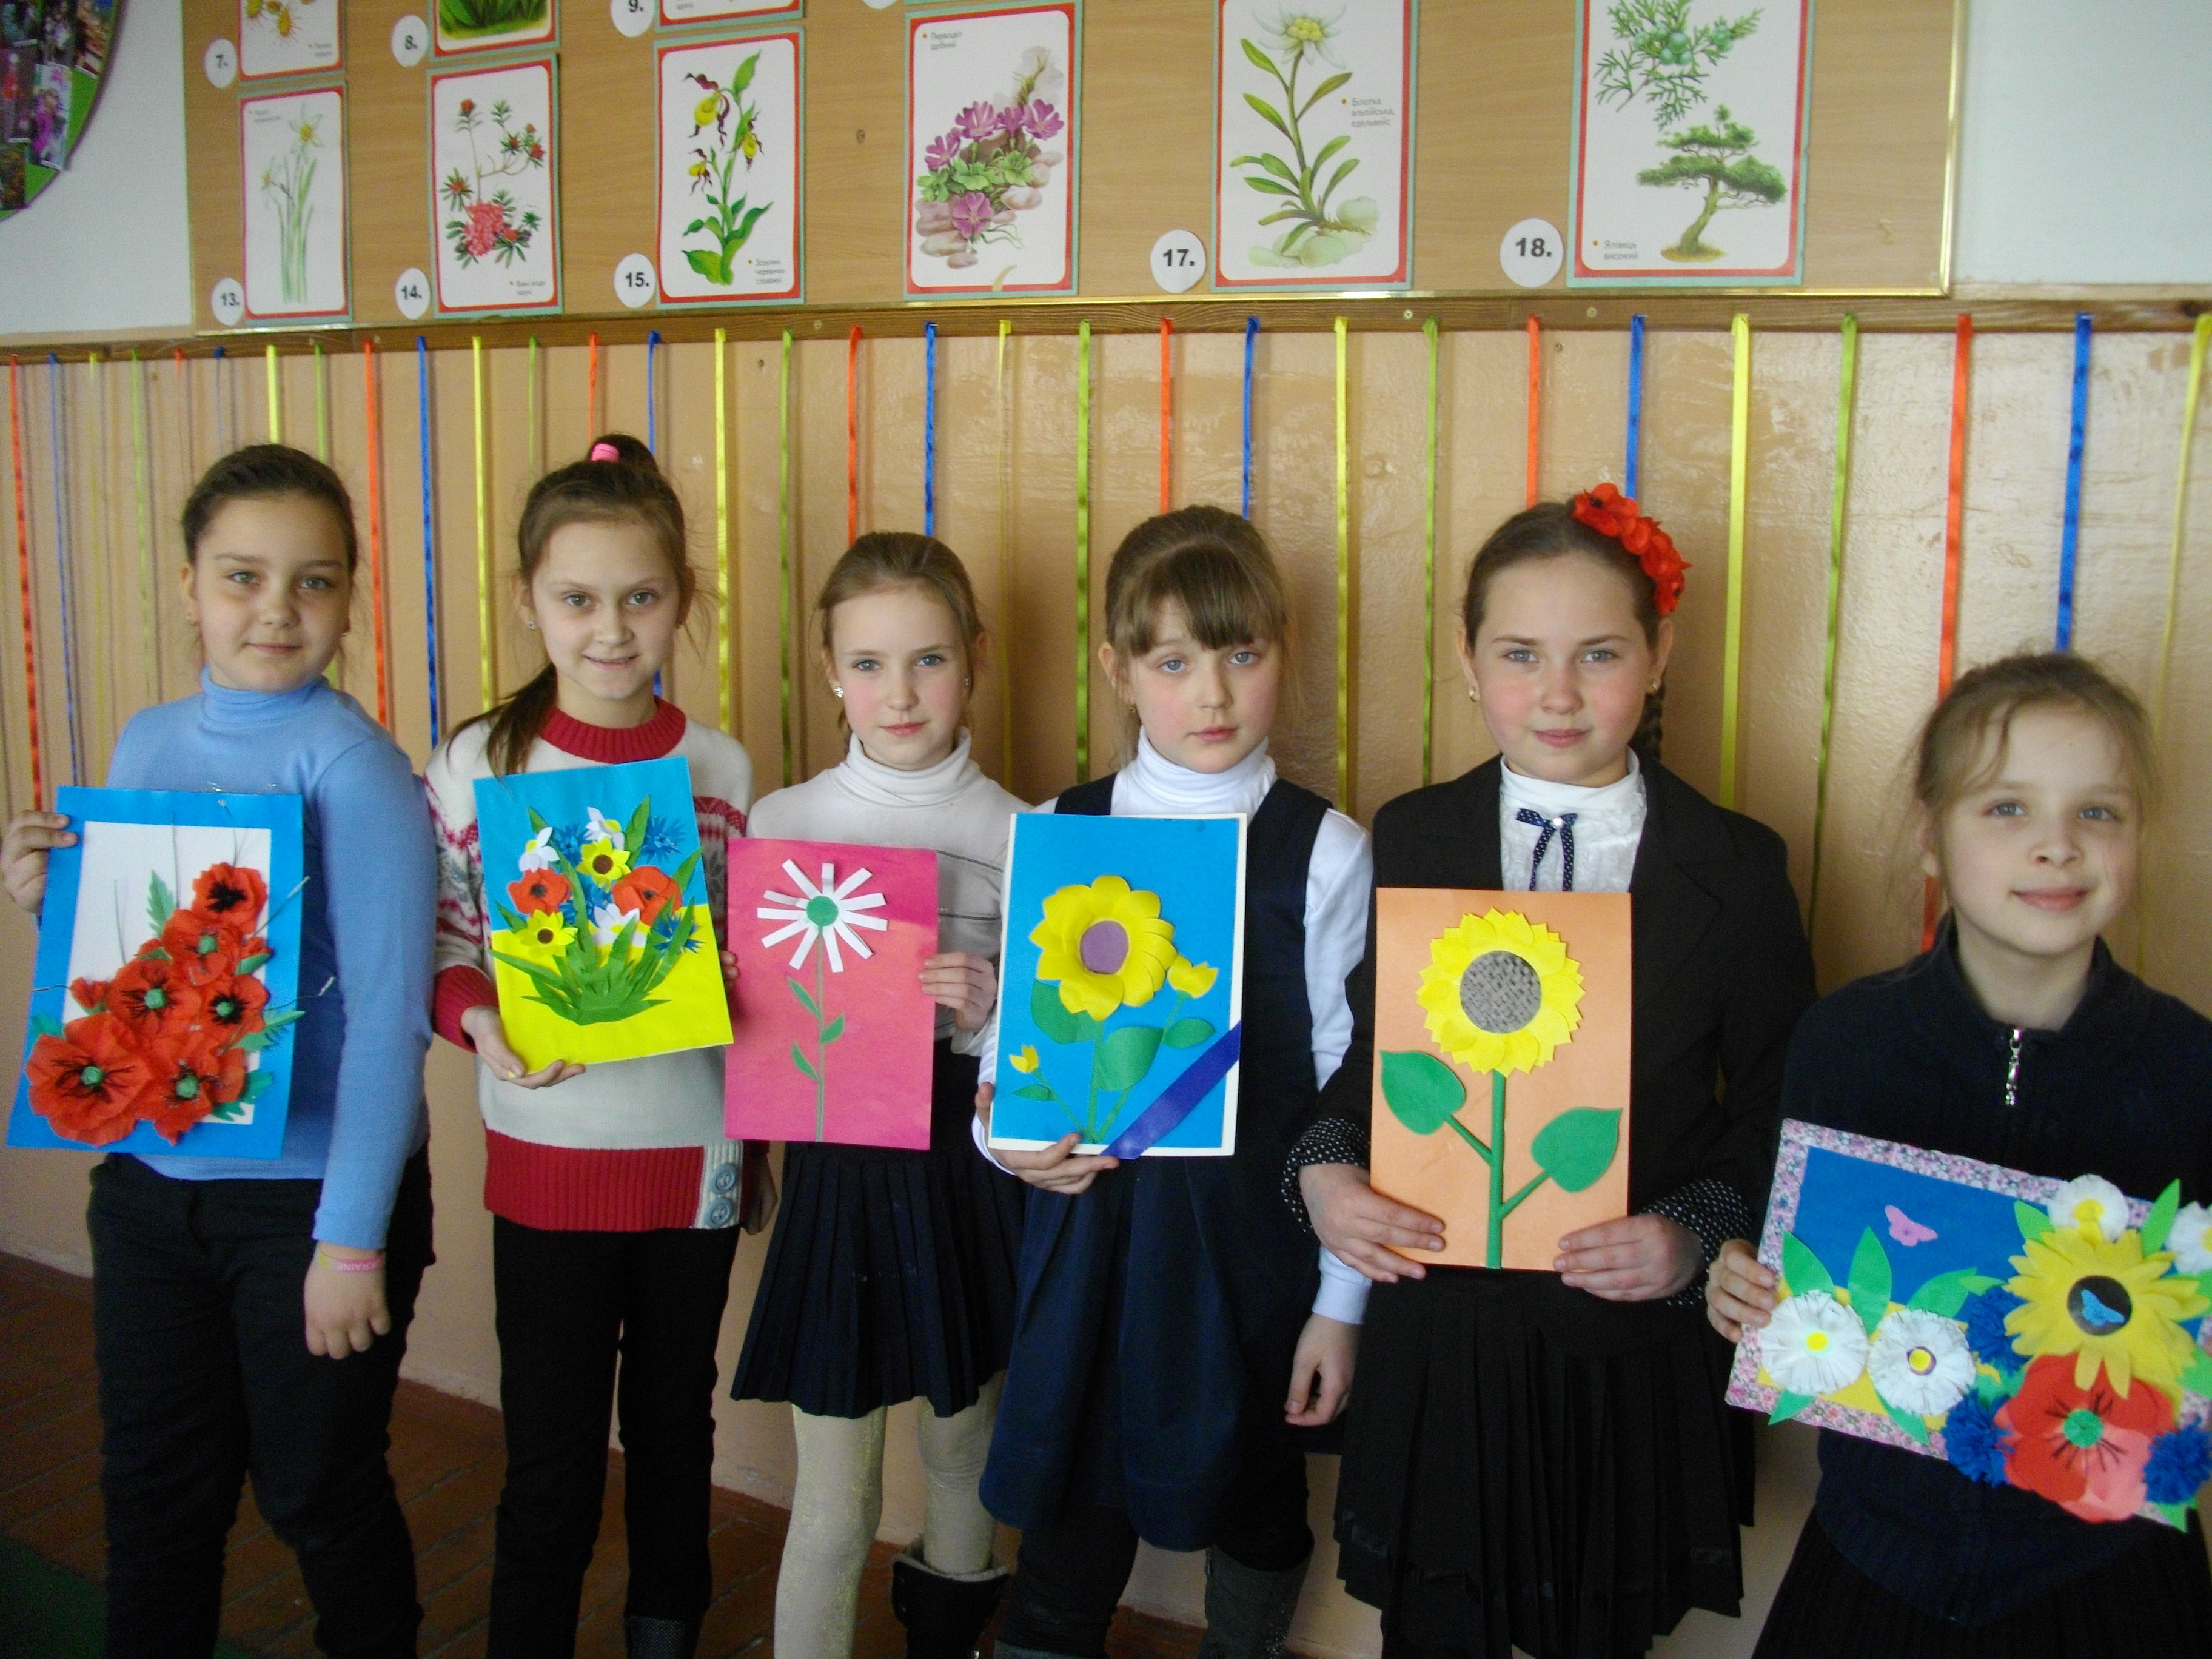 Створення класу-проекта Рослини-символи України